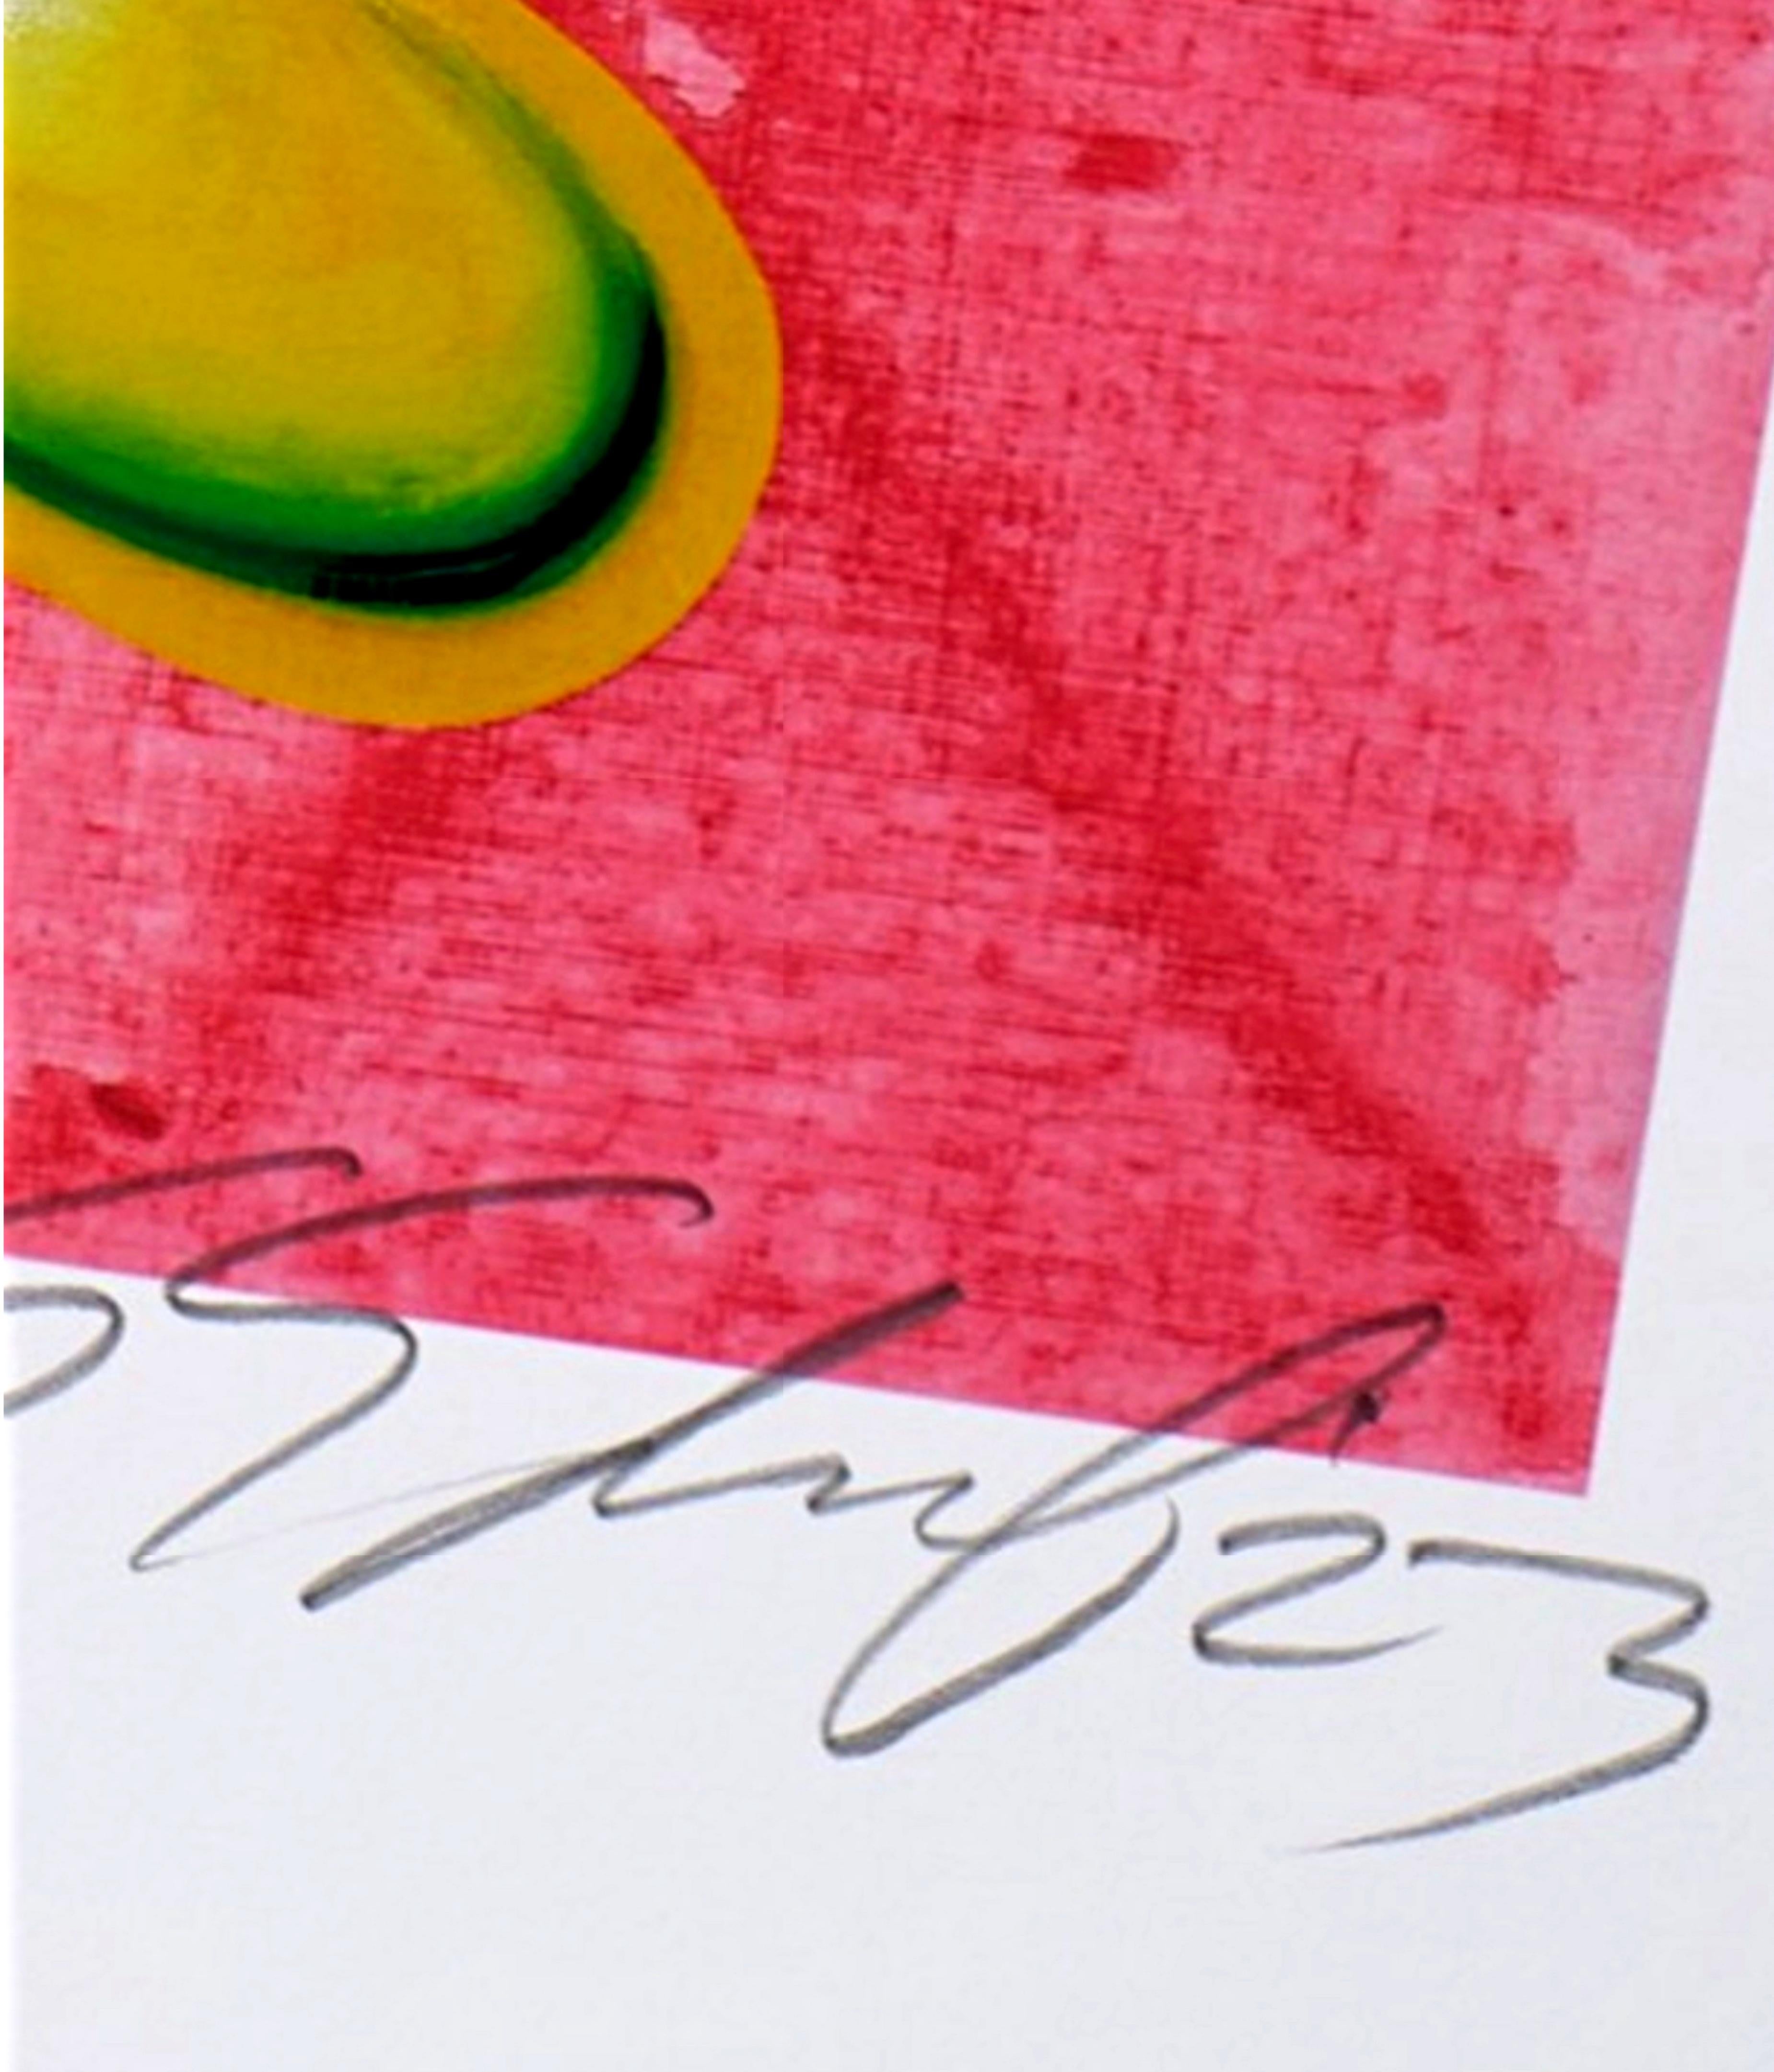 Kenny Scharf
VRING, 2021
Archivdruck mit Metallic-Akzenten, glänzenden Overlays und Siebdruck-Highlights auf Entrada Rag-Papier aus 100 % Baumwolle (290 g/m²) mit handgeschöpften Kanten
Signiert, datiert und nummeriert in der limitierten Auflage von